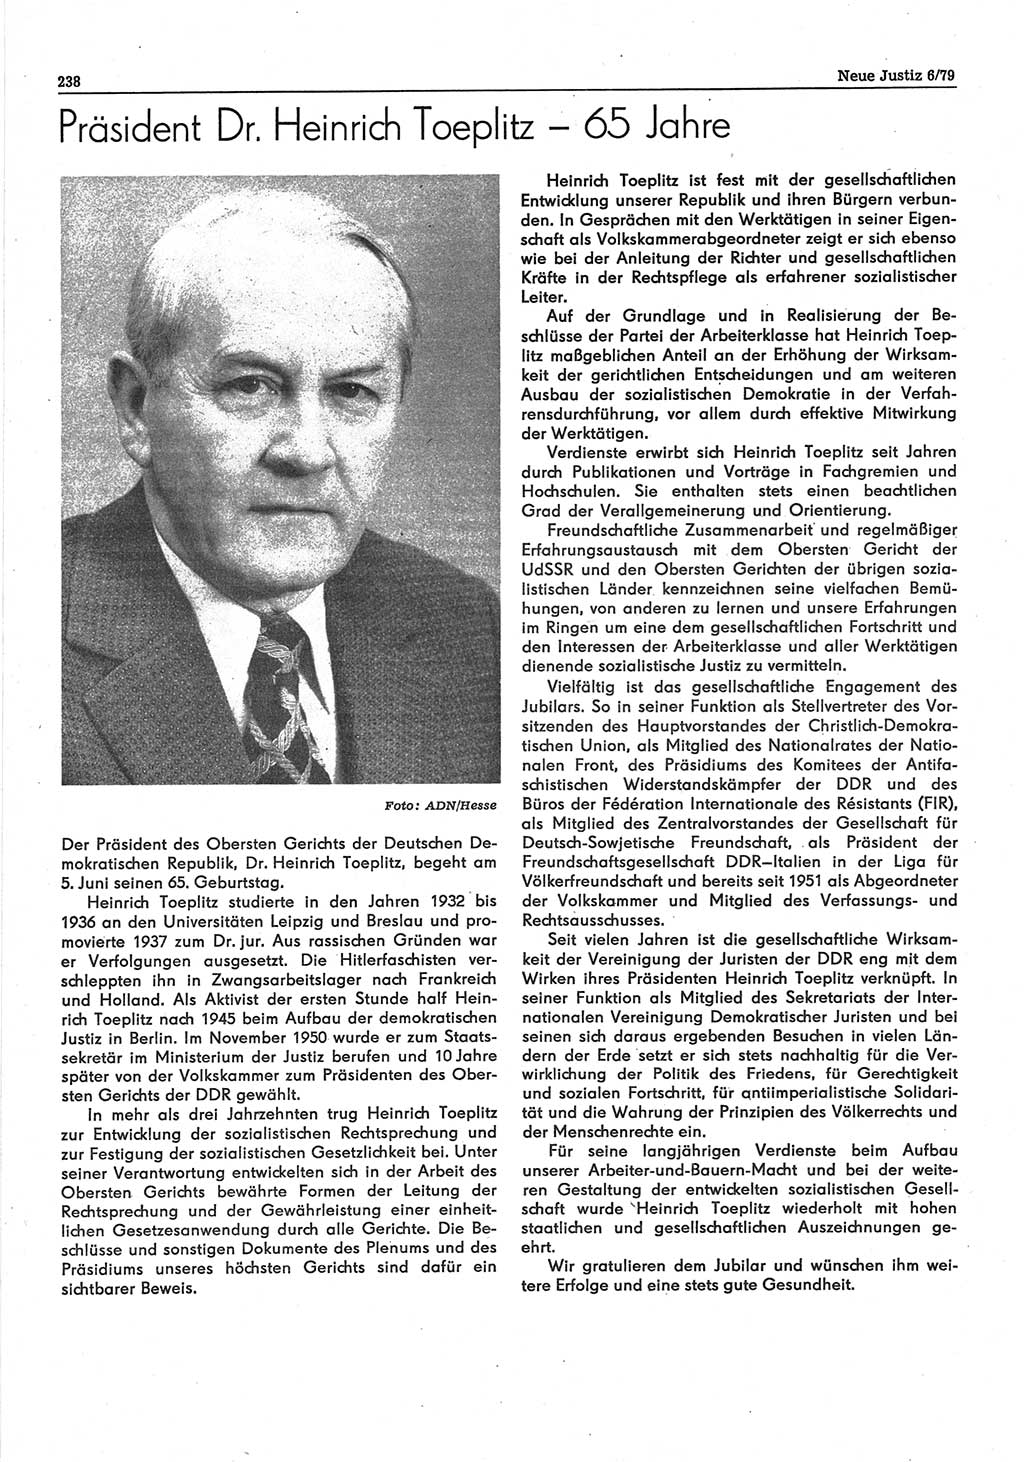 Neue Justiz (NJ), Zeitschrift für sozialistisches Recht und Gesetzlichkeit [Deutsche Demokratische Republik (DDR)], 33. Jahrgang 1979, Seite 238 (NJ DDR 1979, S. 238)